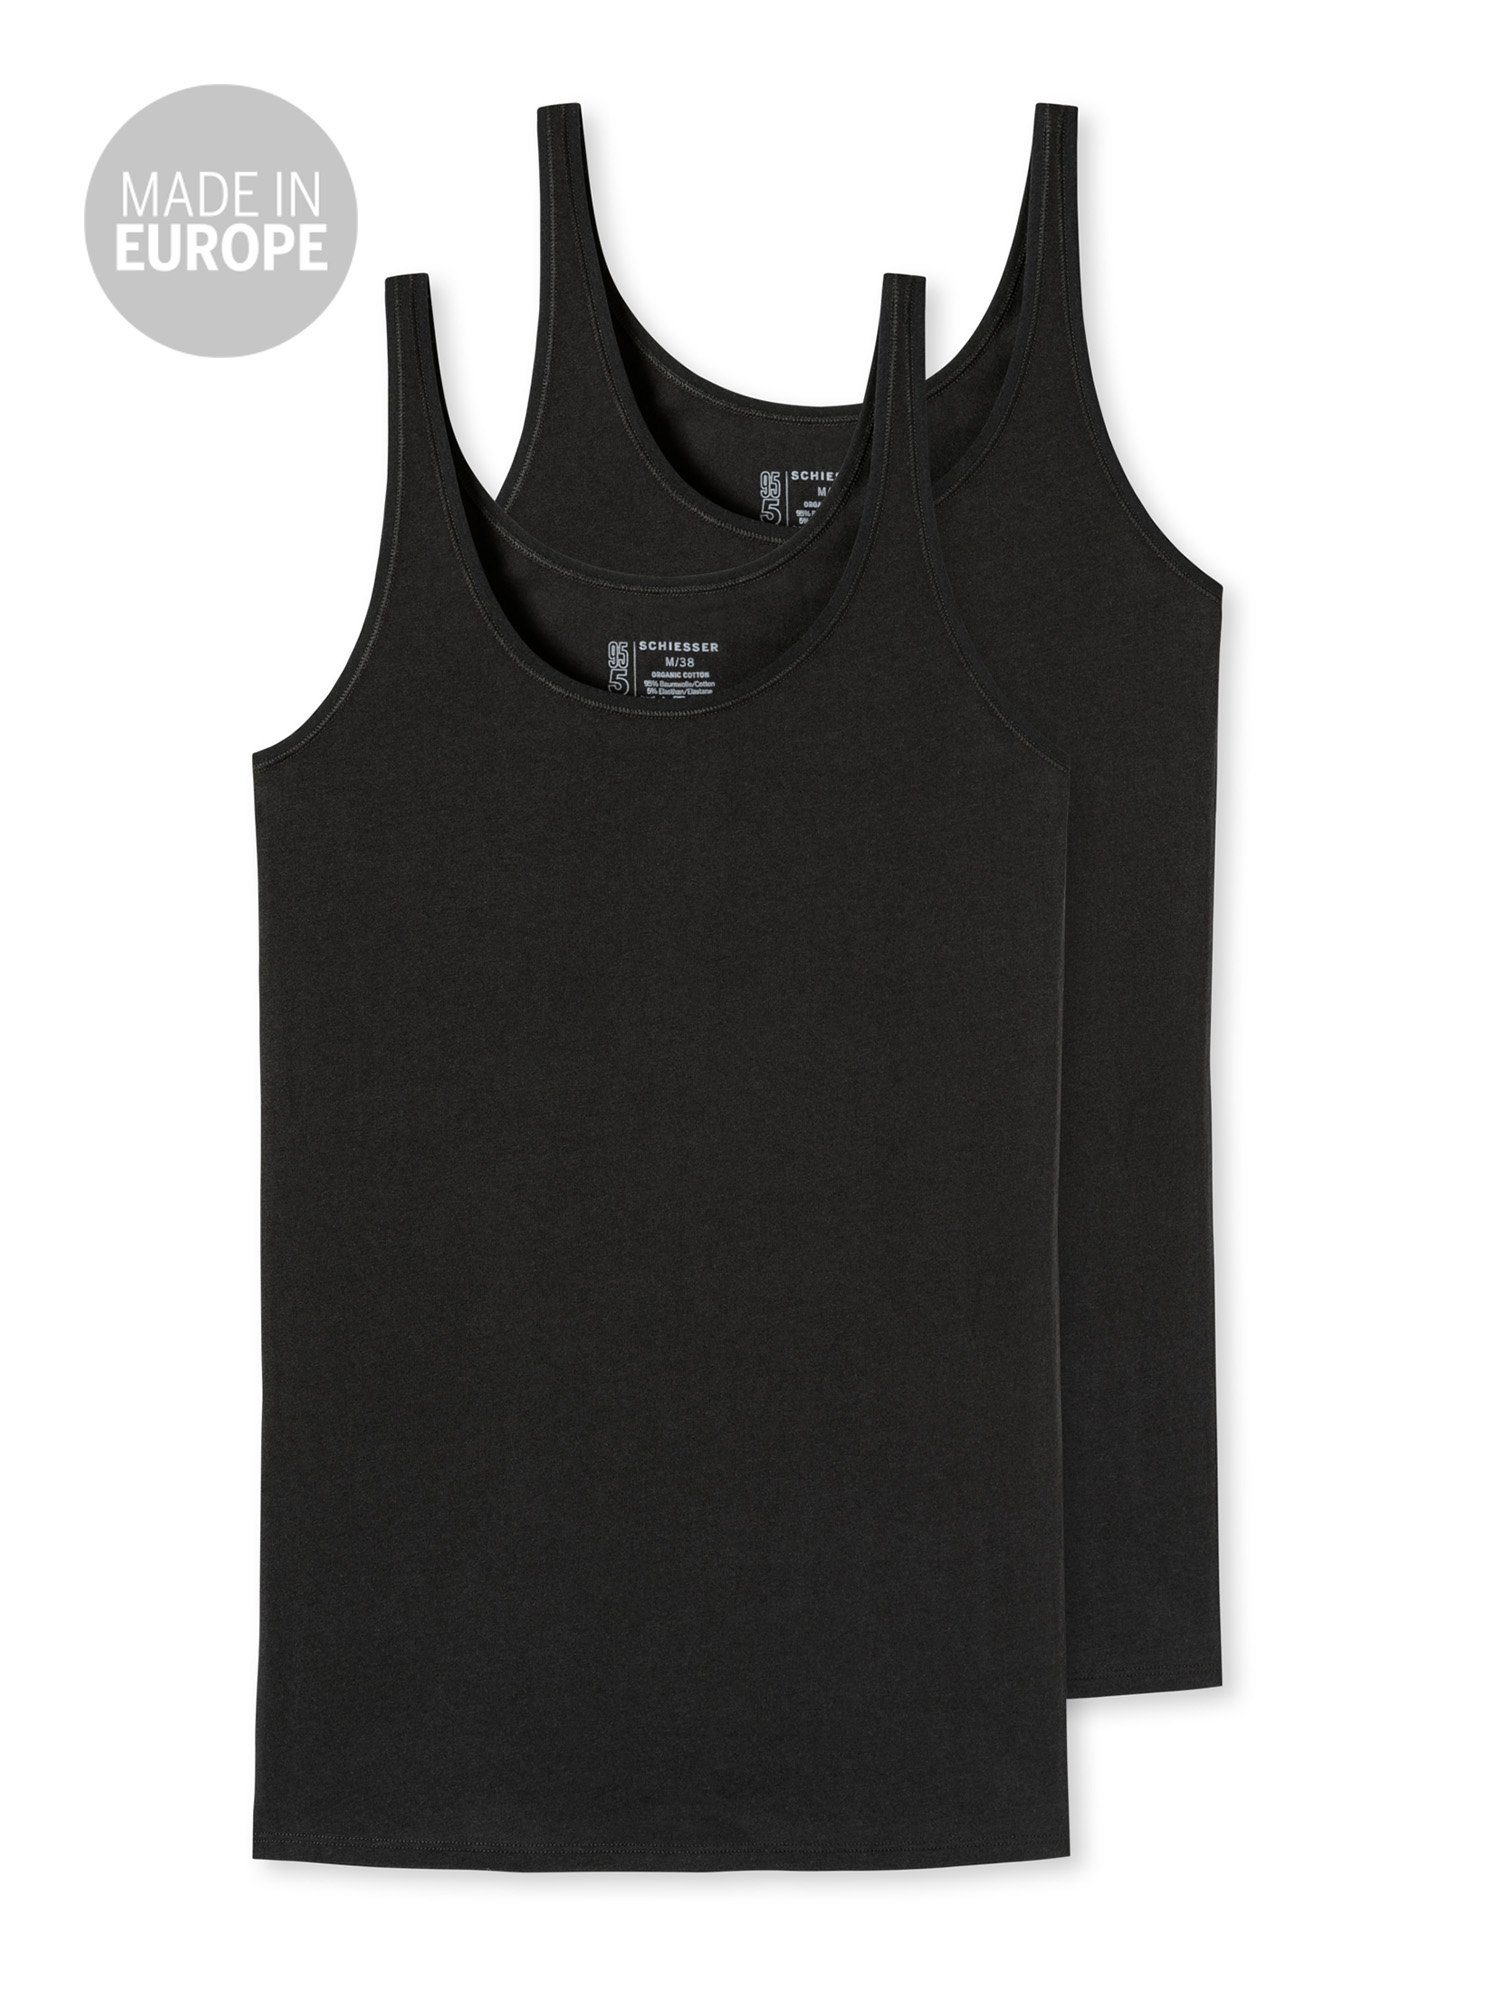 unterzieh-shirt schwarz Schiesser unterhemd Tanktop Tank-top 95/5 (2-tlg)